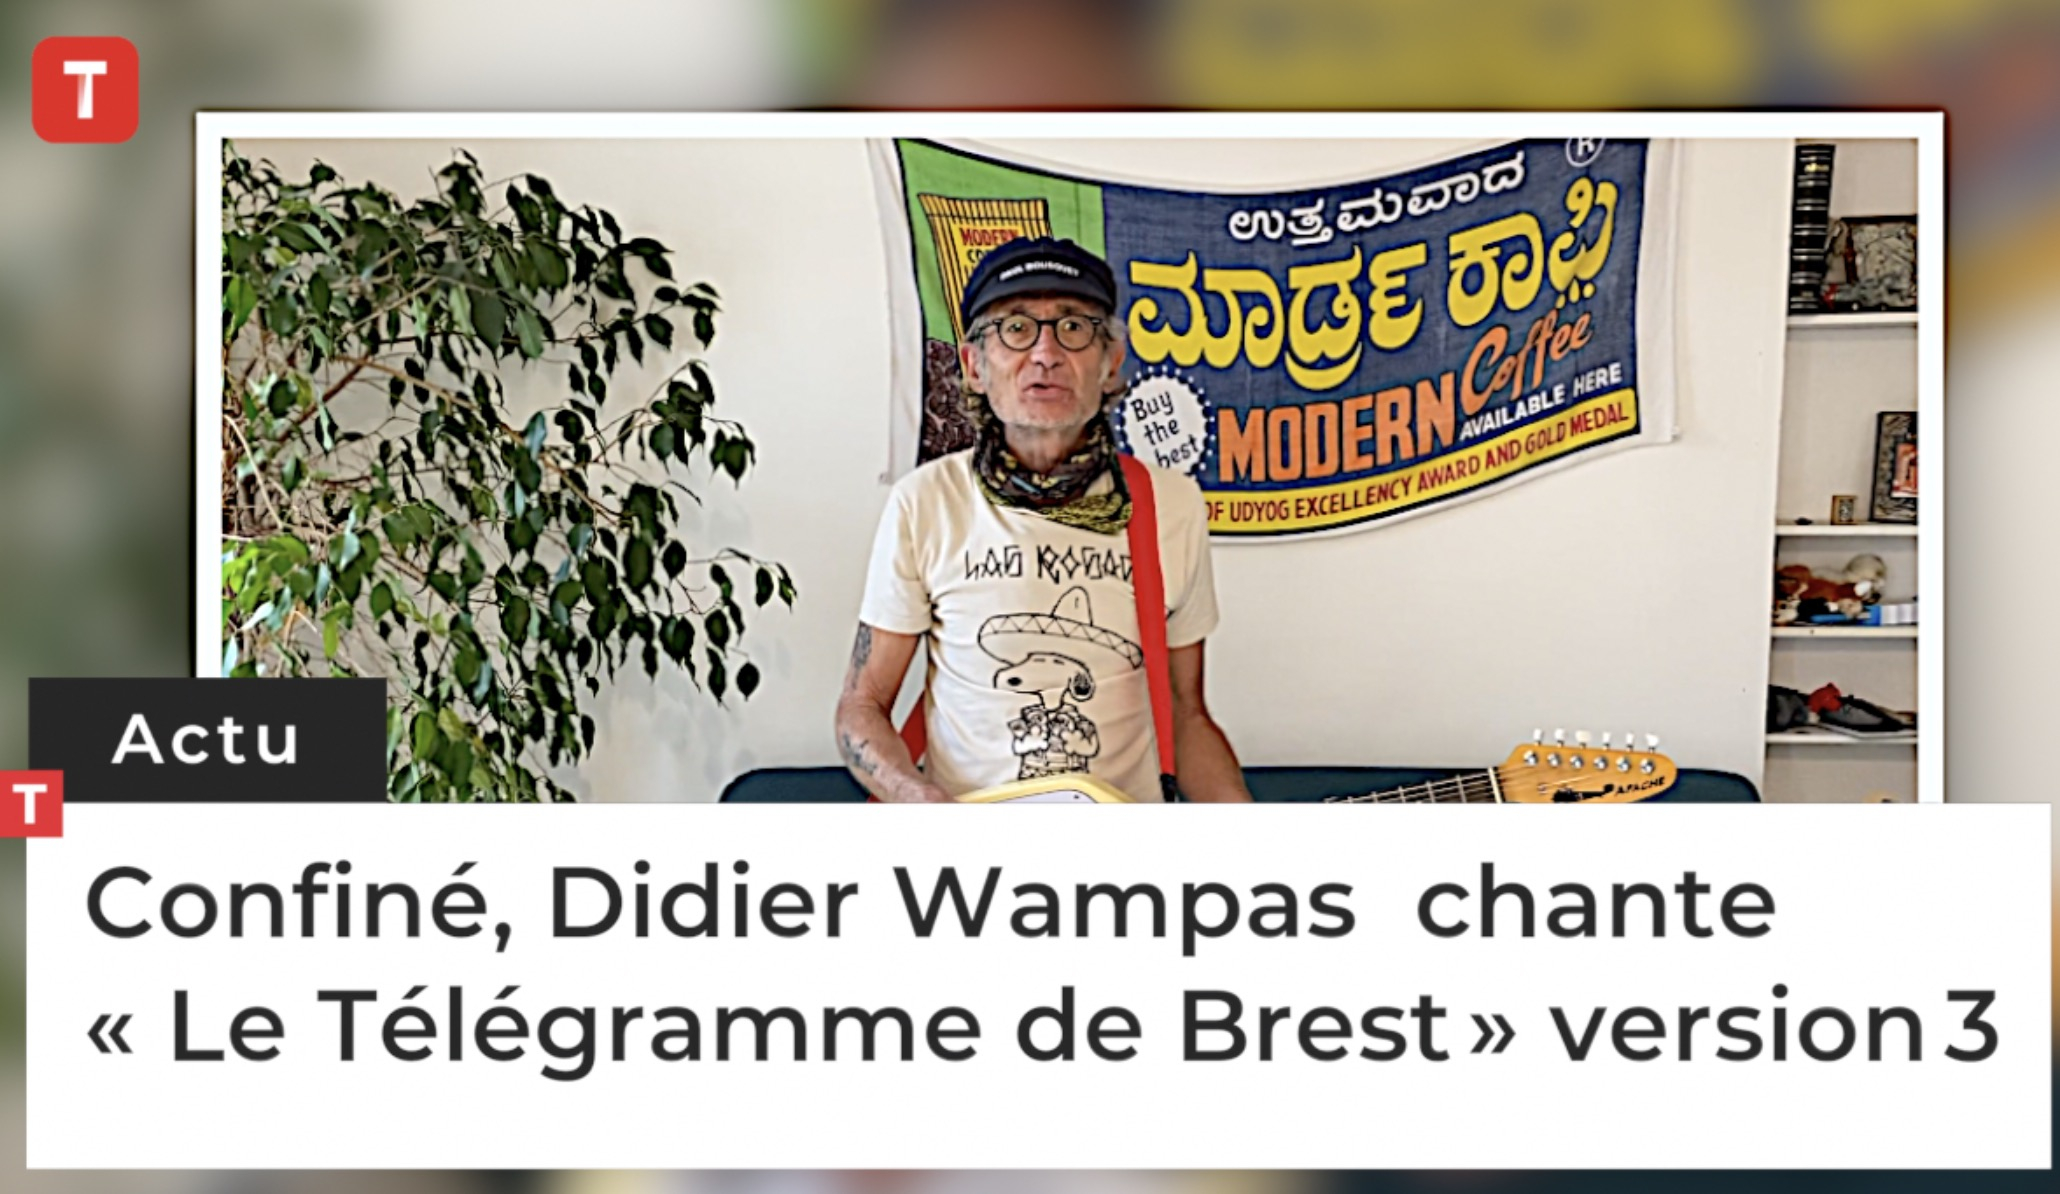 Confiné, Didier Wampas chante « Le Télégramme de Brest » version 3  (Le Télégramme)